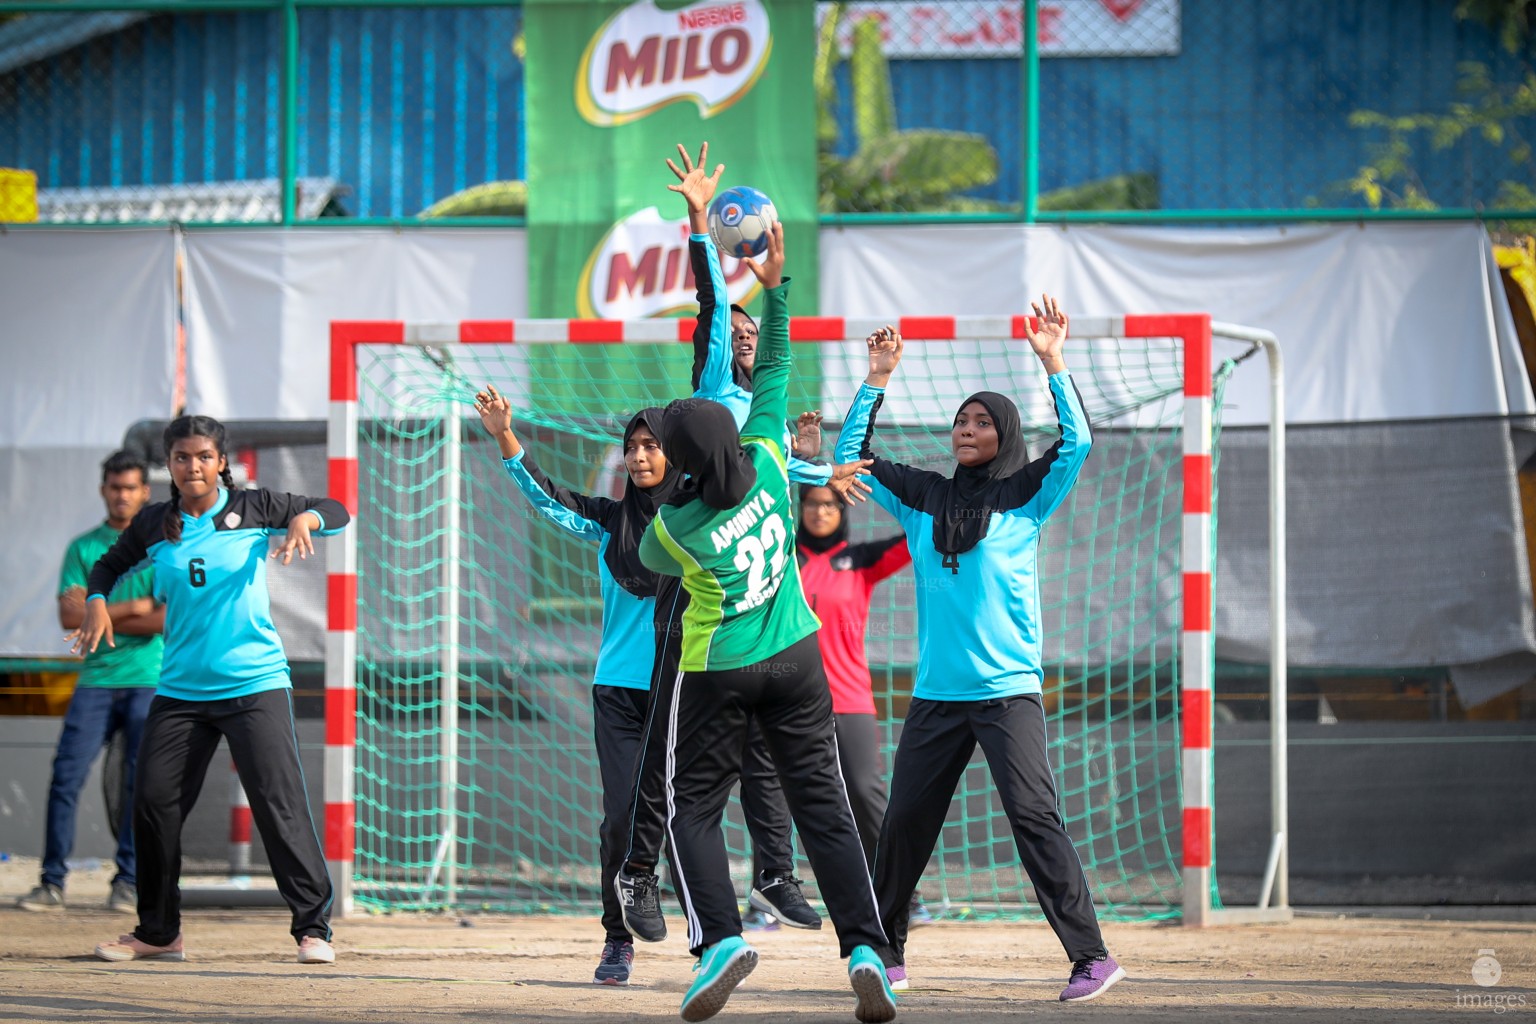 MILO Interschool Handball Tournament 2018 (U16 Semi Finals)